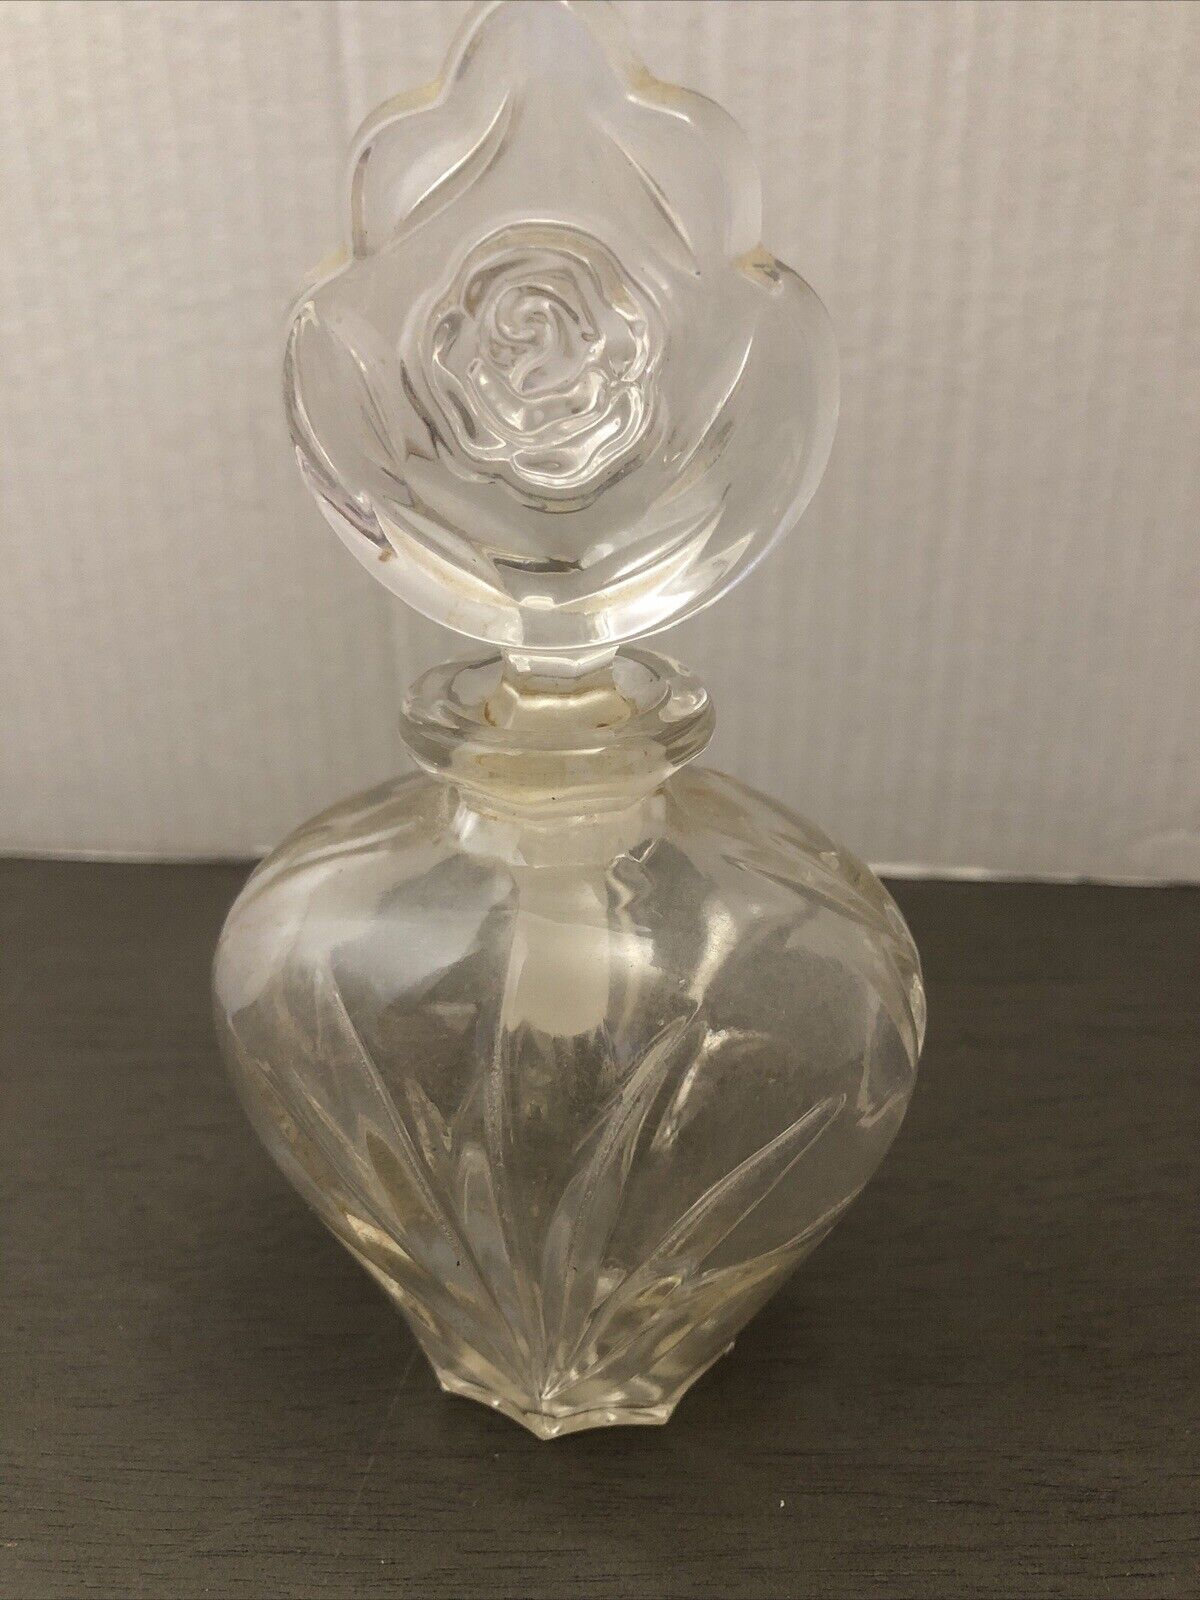 Lead Crystal Perfume Bottle vtg floral design pressed glass